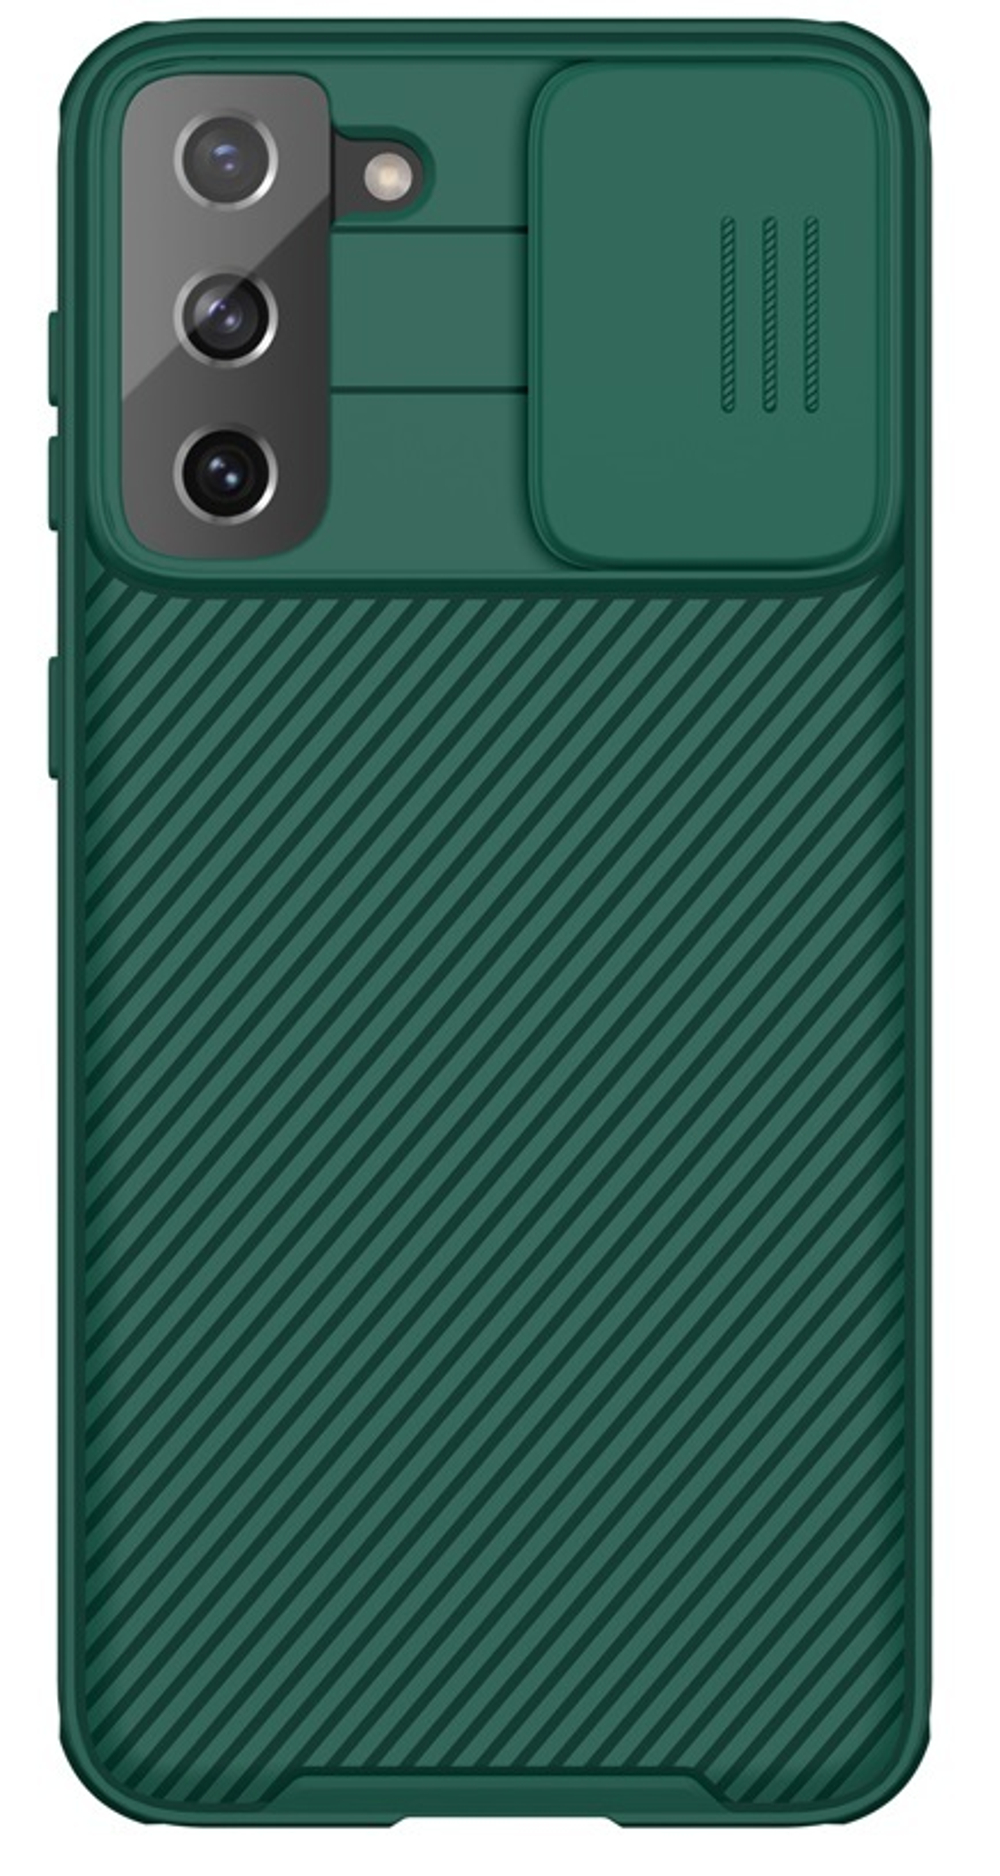 Темно-зеленый чехол от Nillkin для Samsung Galaxy S21+ Плюс, серия CamShield Pro Case с защитной шторкой для задней камеры